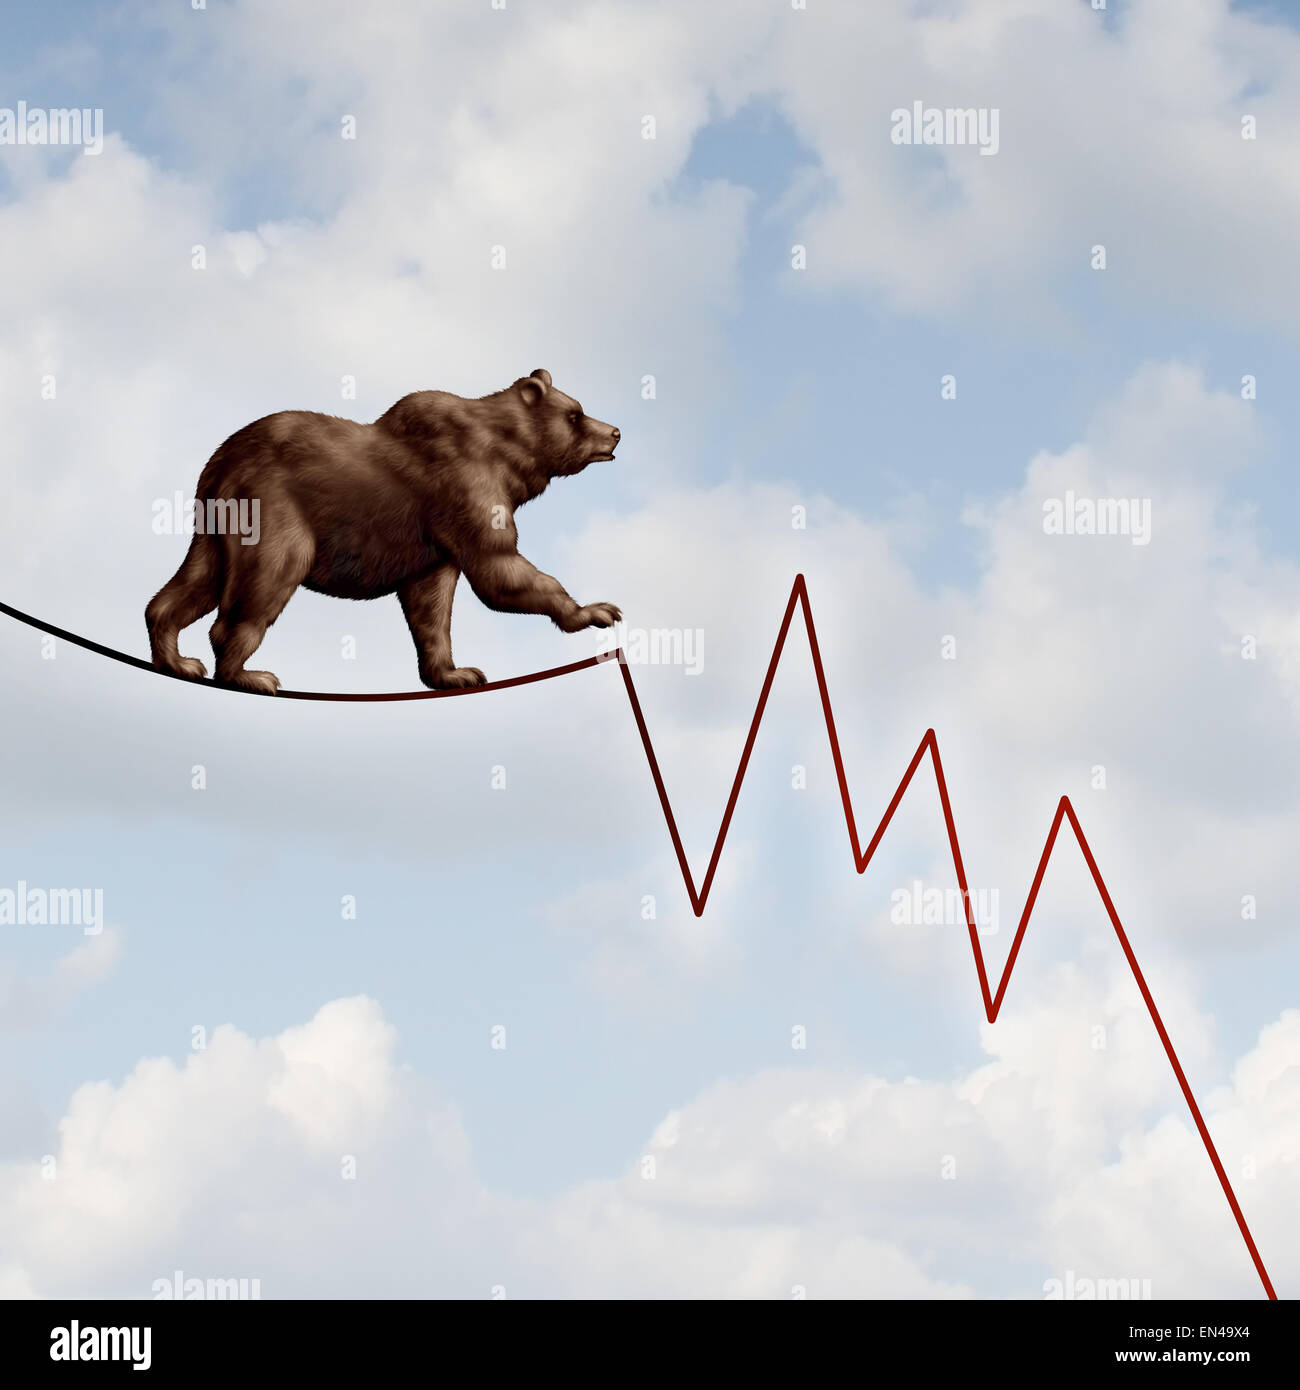 Bär Marktrisiko Finanzkonzept als ein schweres bearish Tier zu Fuß auf einem hohen Seil als Börse Verlust Diagramm Diagramm repräsentieren die Investitionen Gefahr im Verzug geformt. Stockfoto